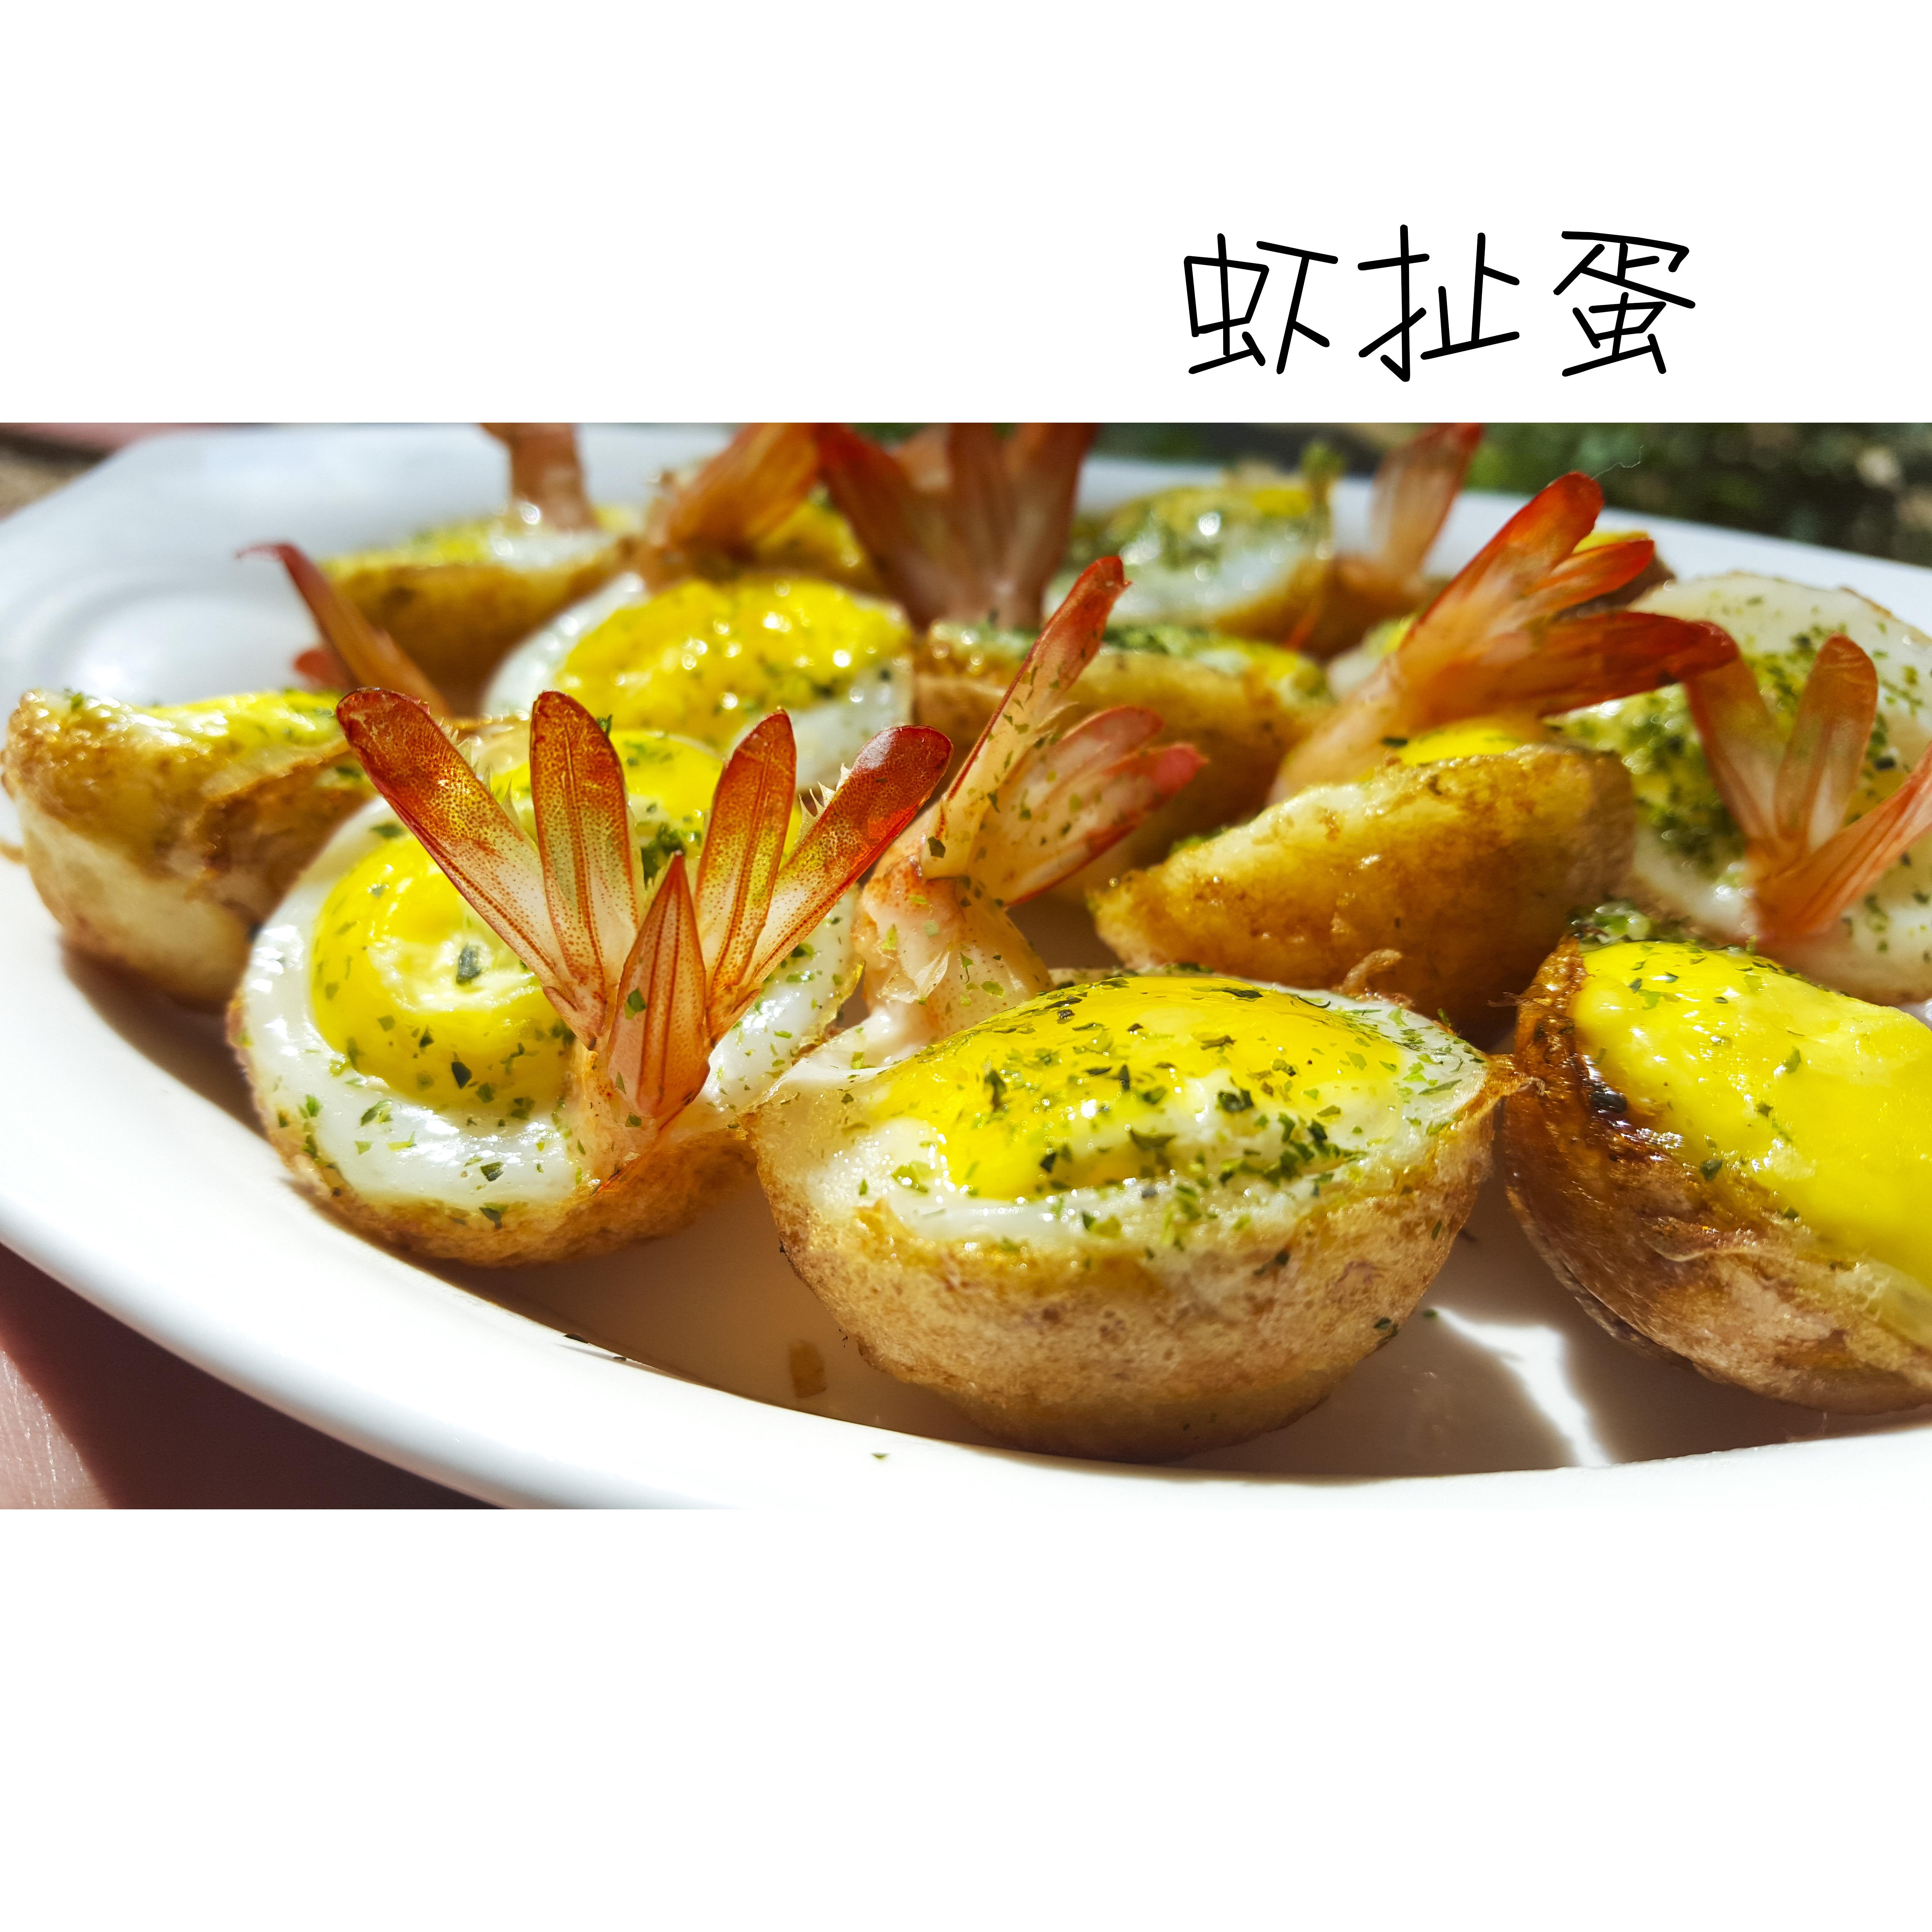 虾扯蛋——台湾夜市小吃的做法